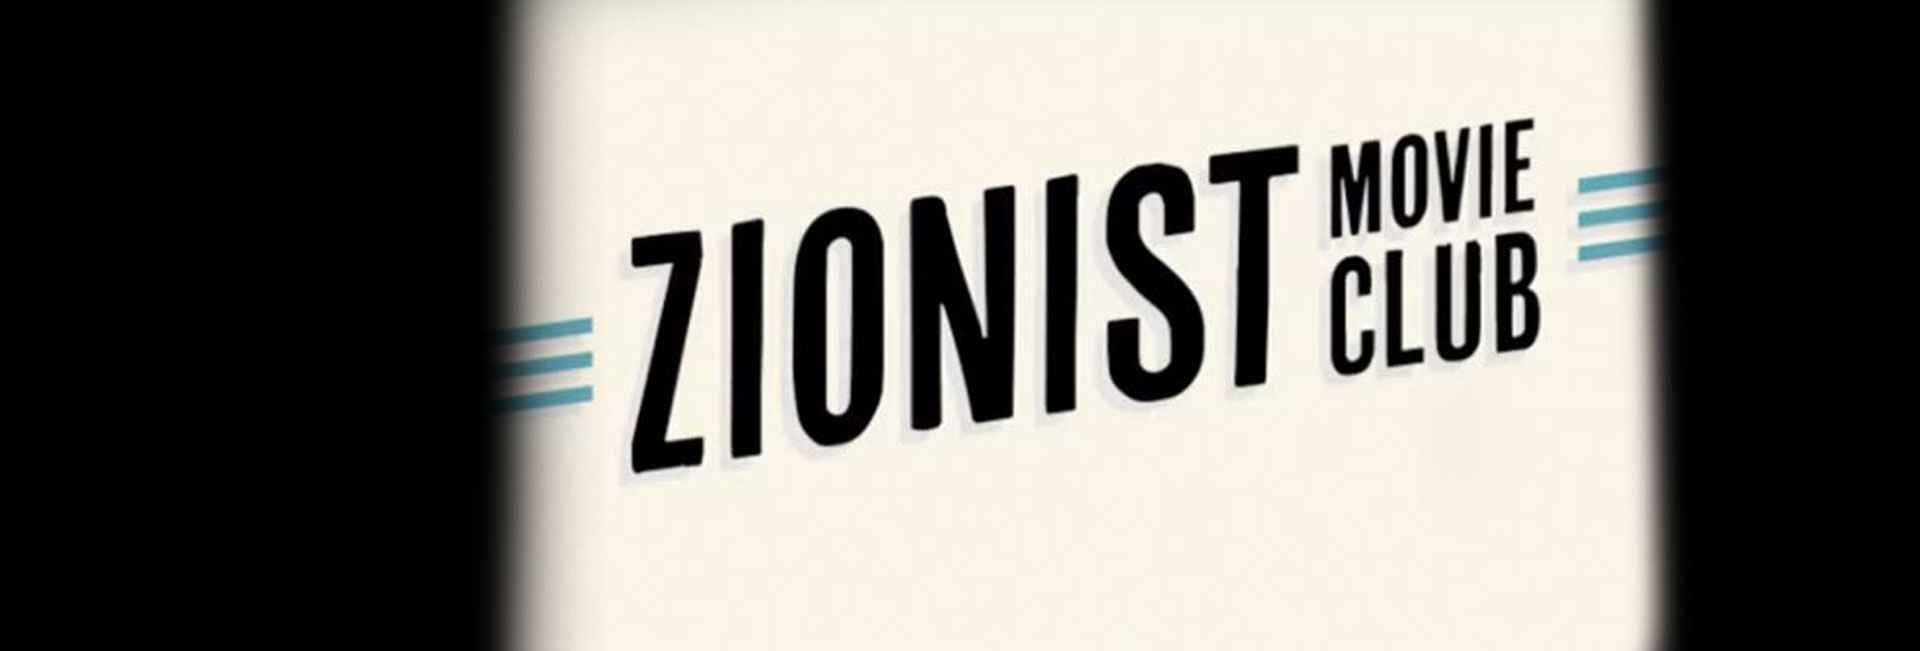 Ushpizin | Zionist Movie Club